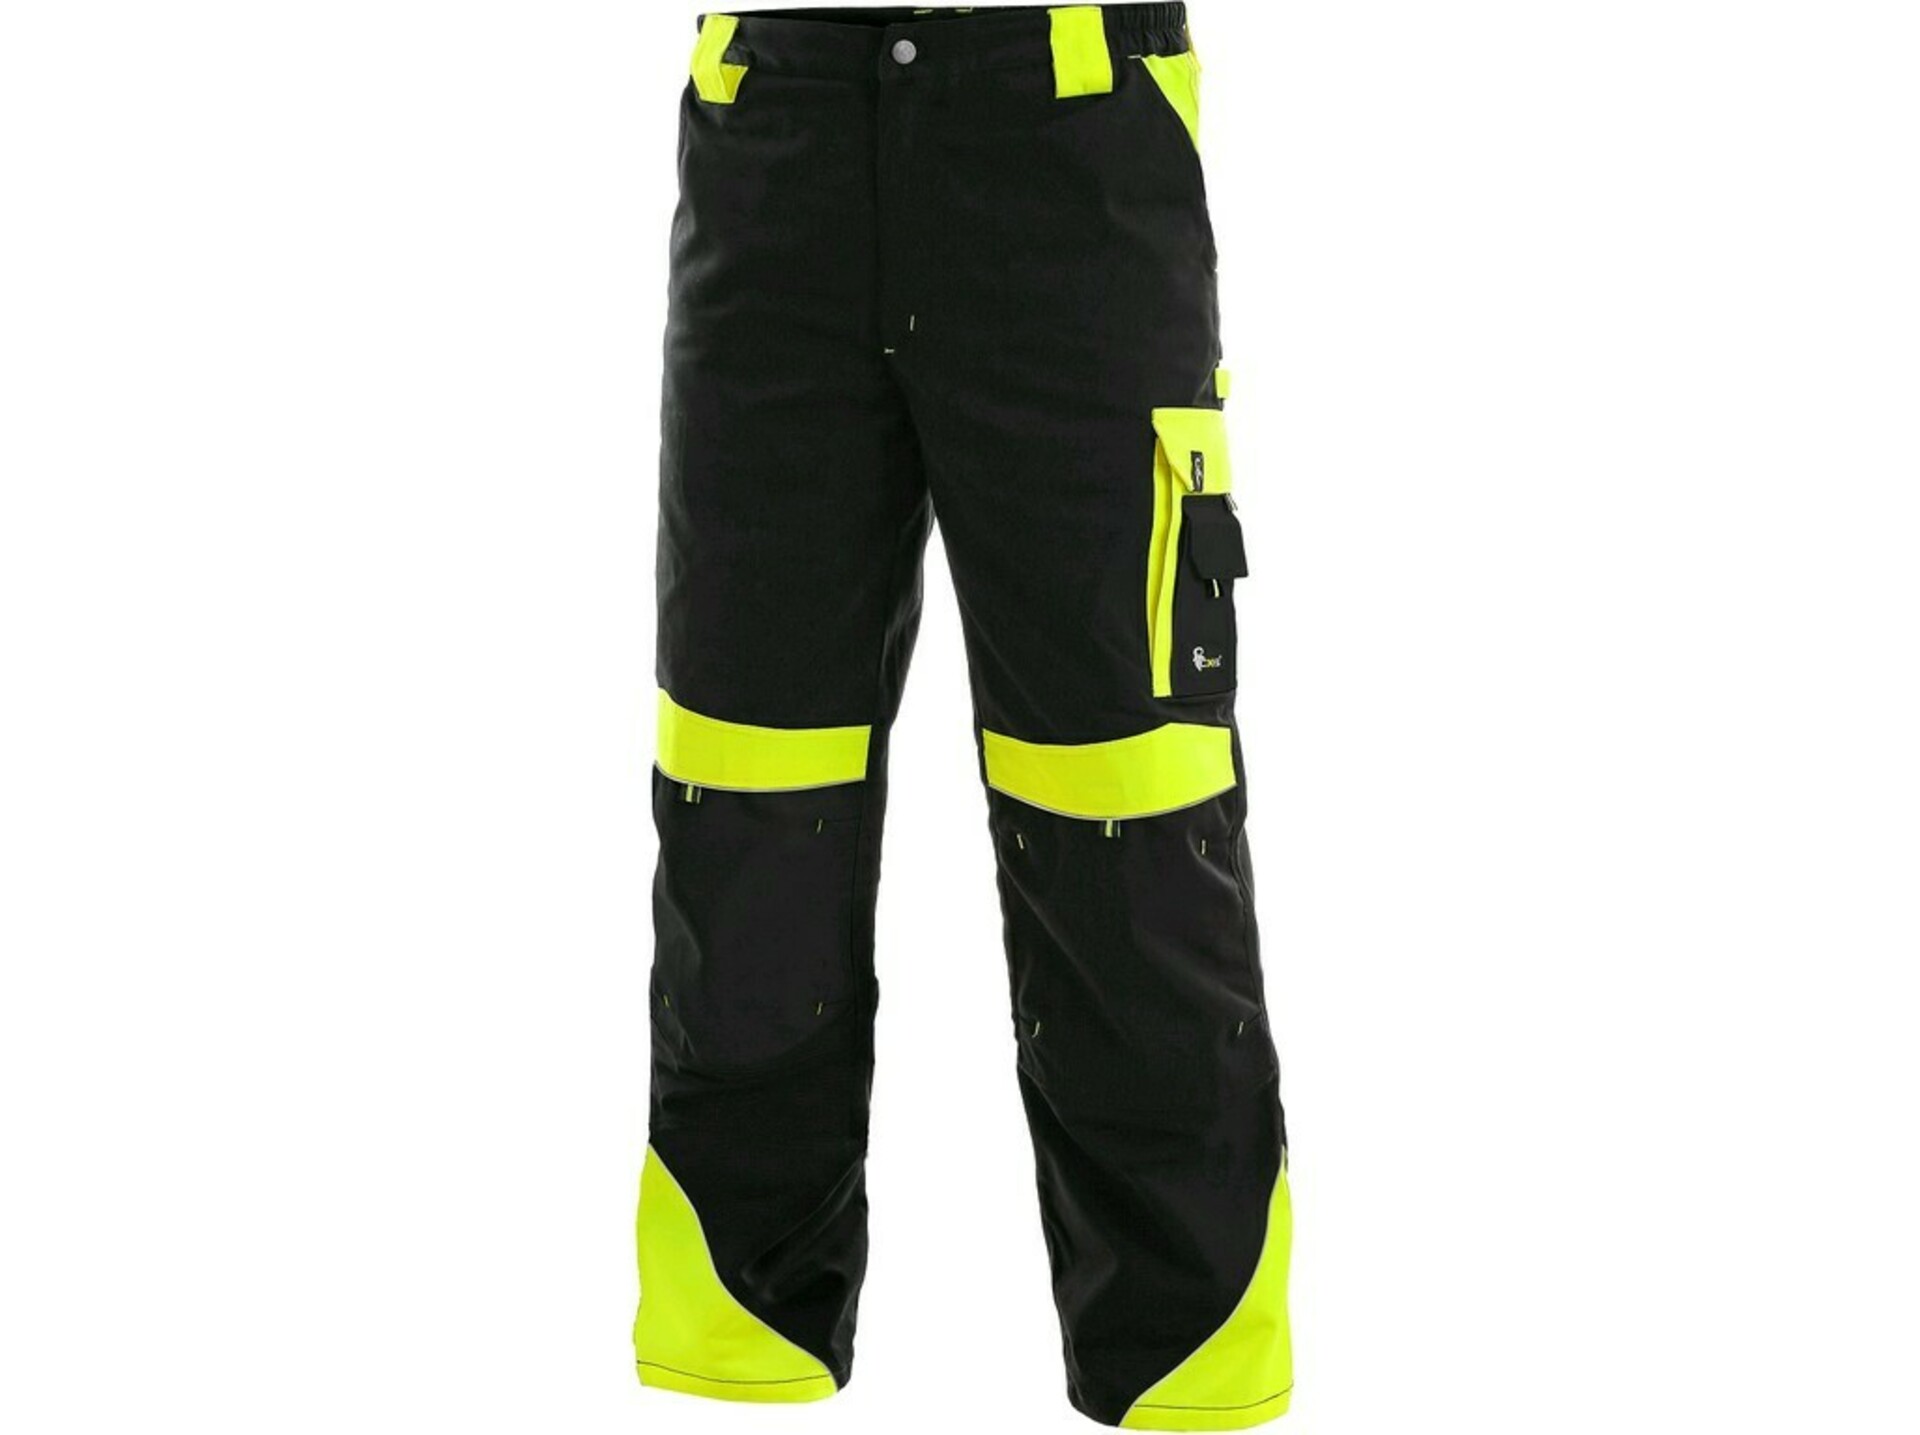 CXS SIRIUS BRIGHTON pánské Kalhoty pracovní do pasu zimní černá/žlutá 48-50 + Bezplatné vrácení zboží